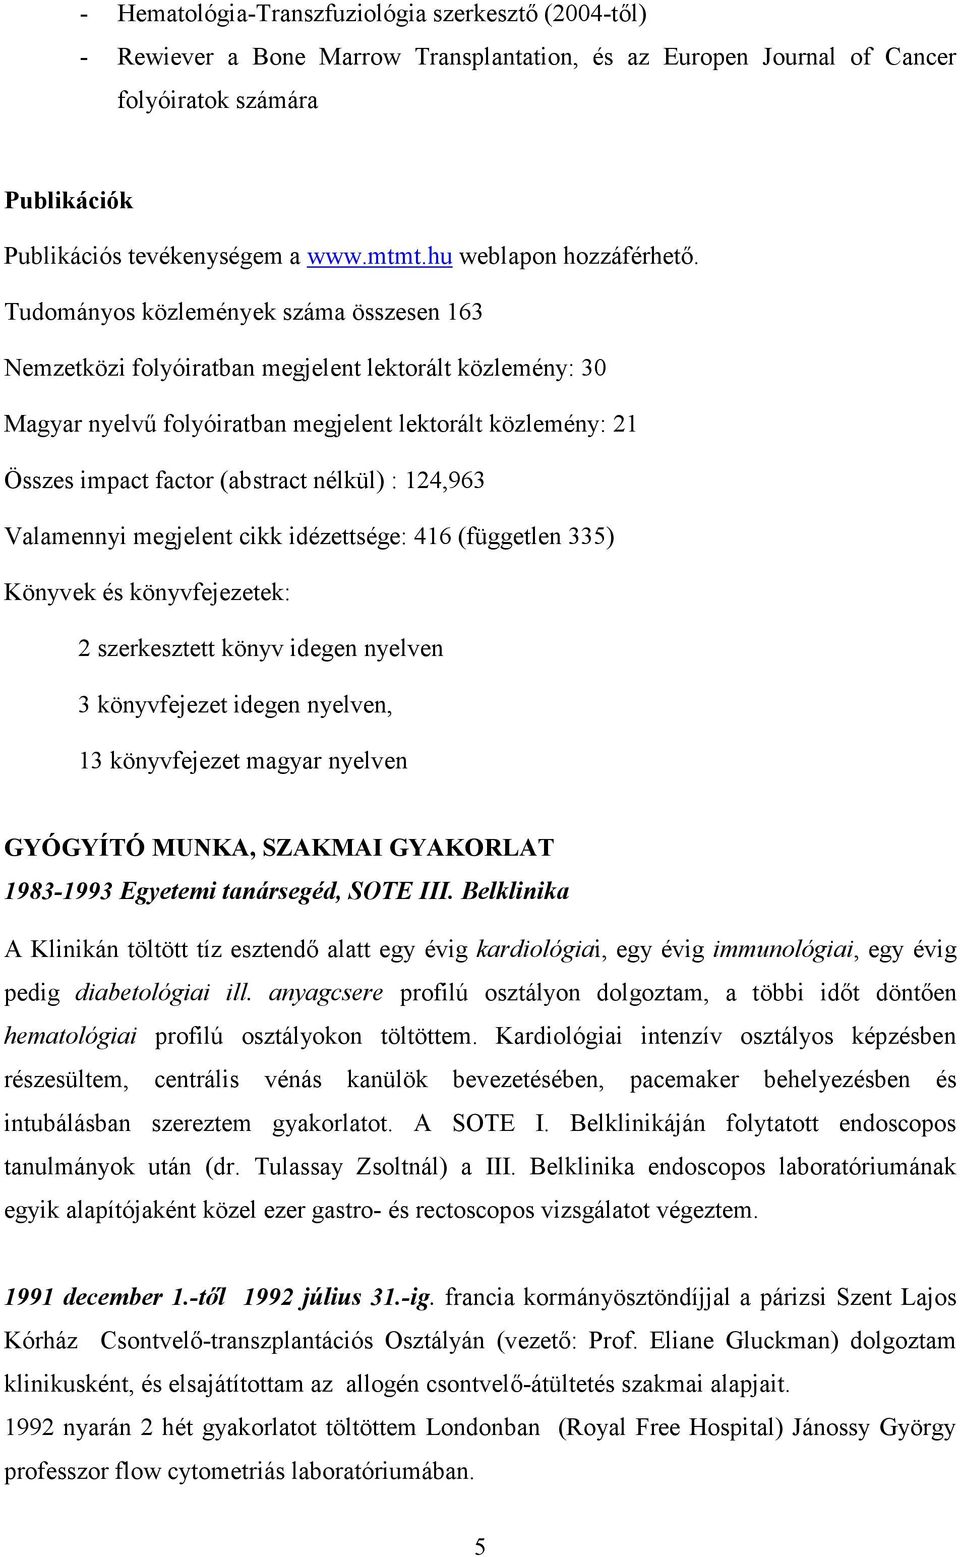 Tudományos közlemények száma összesen 163 Nemzetközi folyóiratban megjelent lektorált közlemény: 30 Magyar nyelvő folyóiratban megjelent lektorált közlemény: 21 Összes impact factor (abstract nélkül)